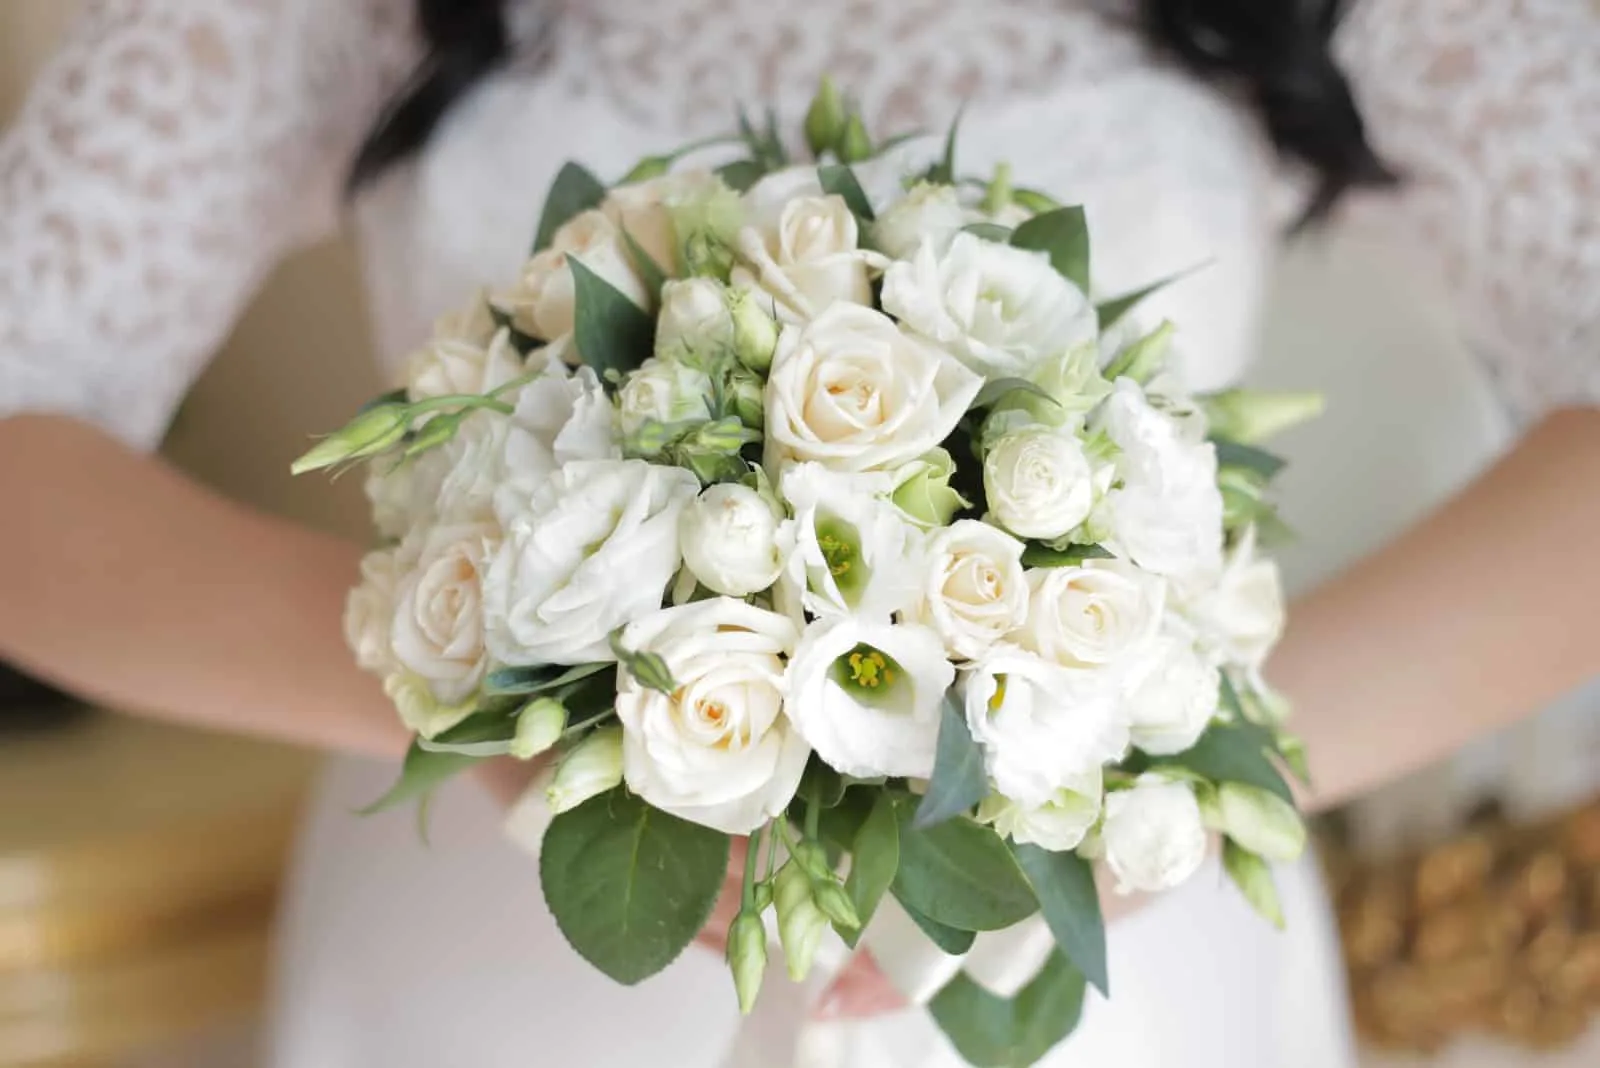 die Braut hält einen Brautstrauß aus weißen Rosen und Eustoma